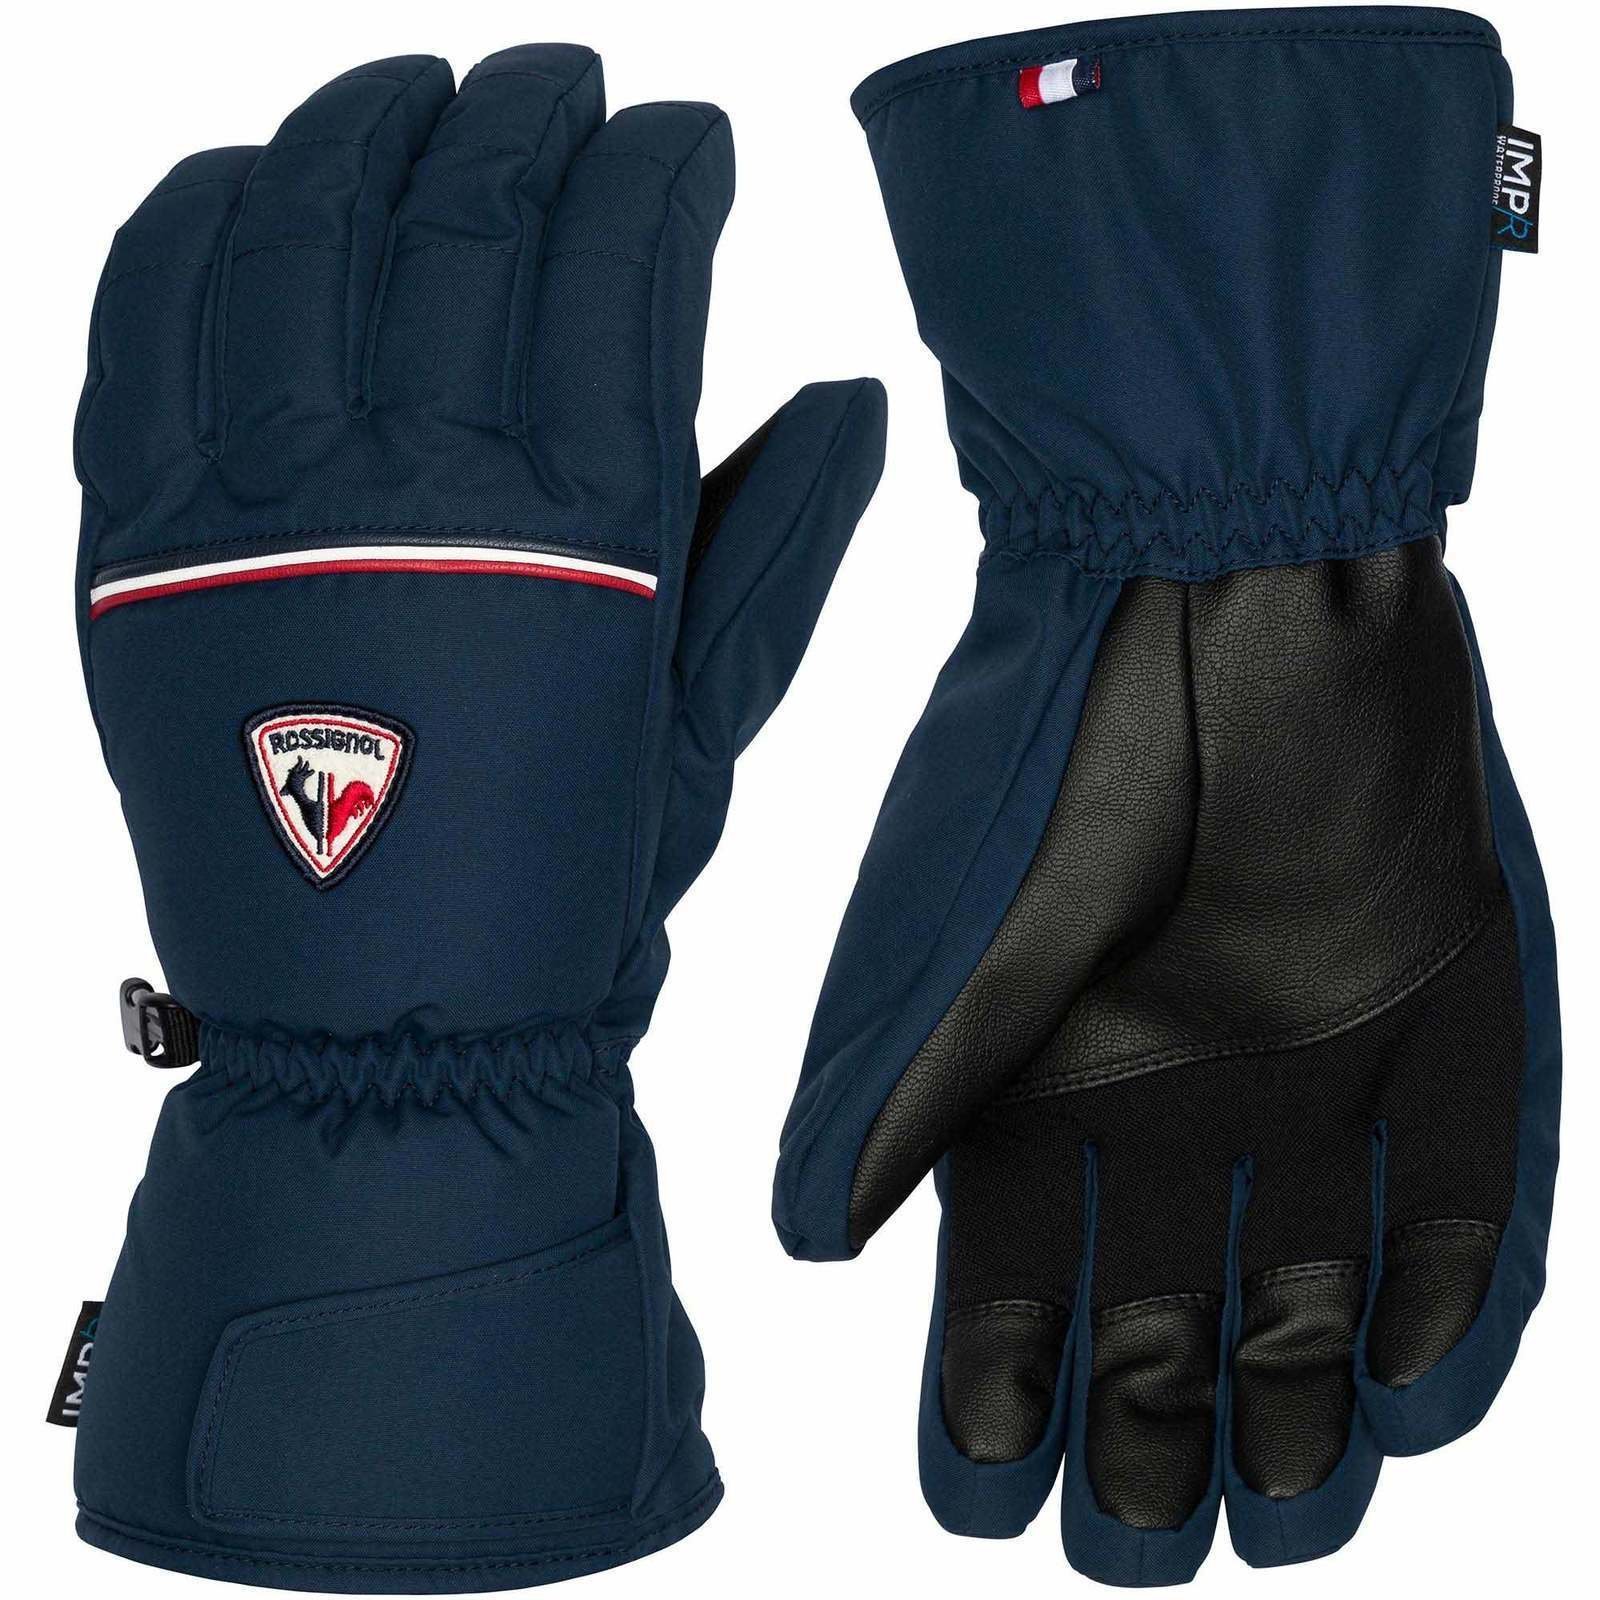 СКИ Ръкавици Rossignol Mens Legend IMPR Gloves Dark Navy M СКИ Ръкавици